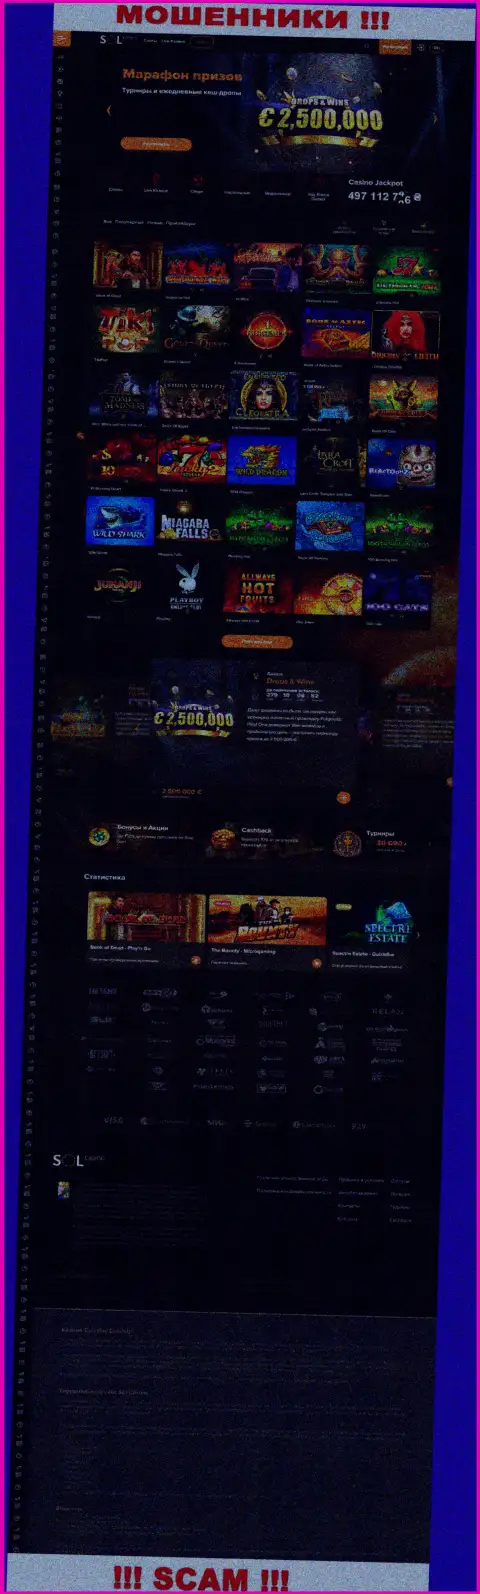 Главная страница официального веб-сайта мошенников Sol Casino